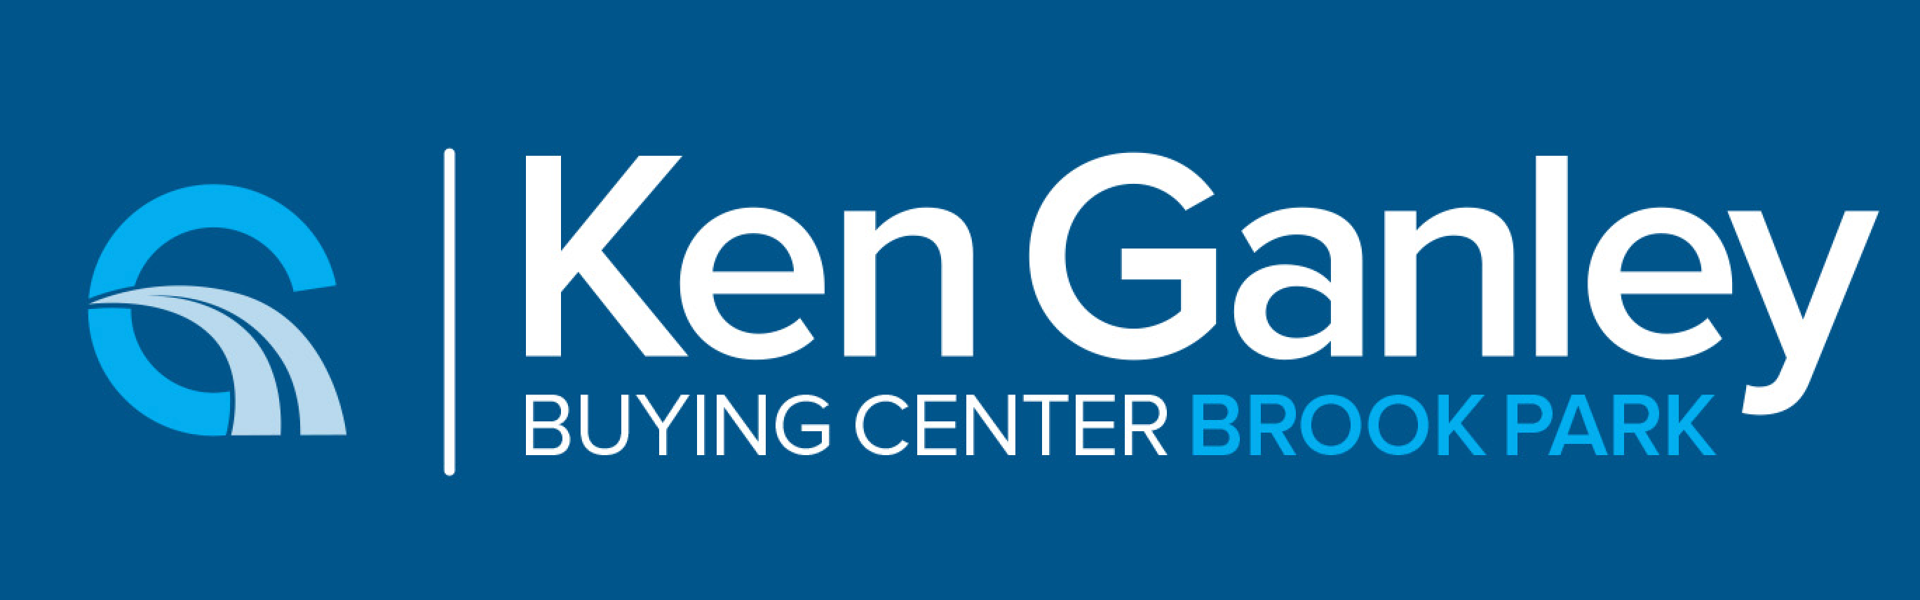 Ken Ganley Buying Center Brook Park